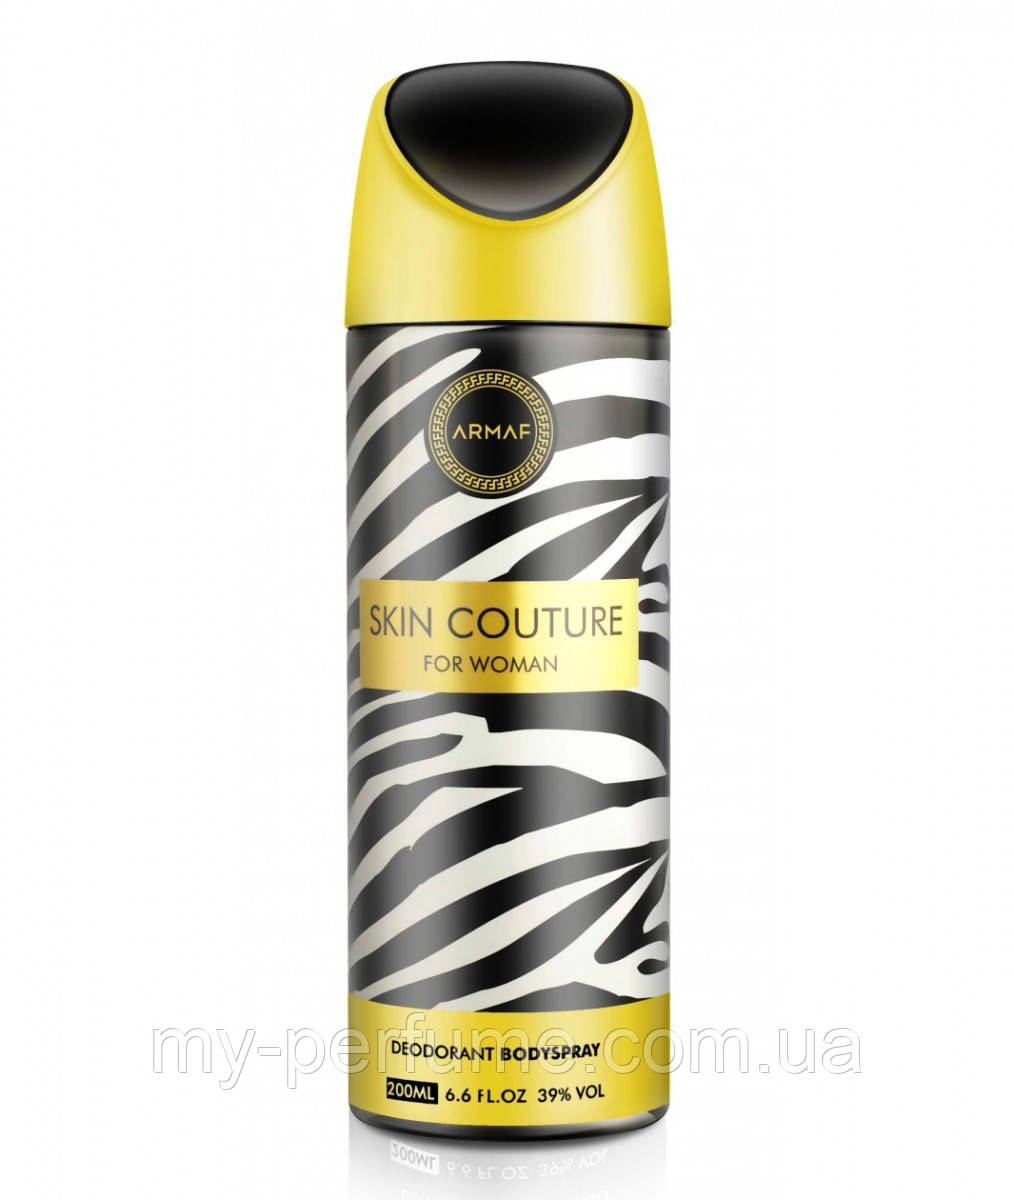 

Женский парфюмированный дезодорант Armaf SKIN COUTURE 200 ml